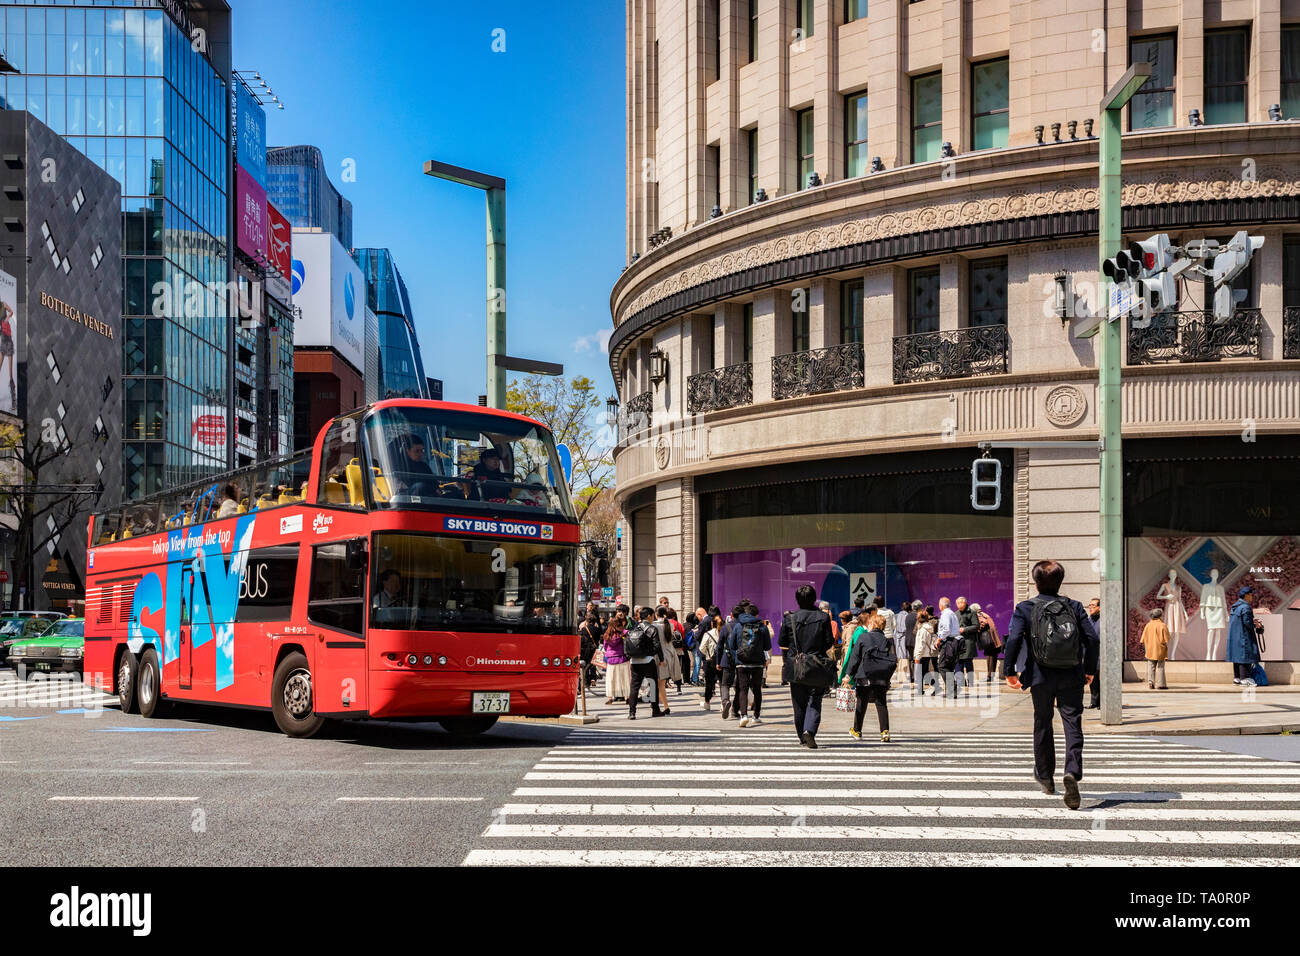 3 avril 2019 : Tokyo, Japon - Tokyo, un bus de ciel ouvert rouge haut double decker bus, visite de la Ginza districtm est arrêté à un passage à niveau de la route. Banque D'Images